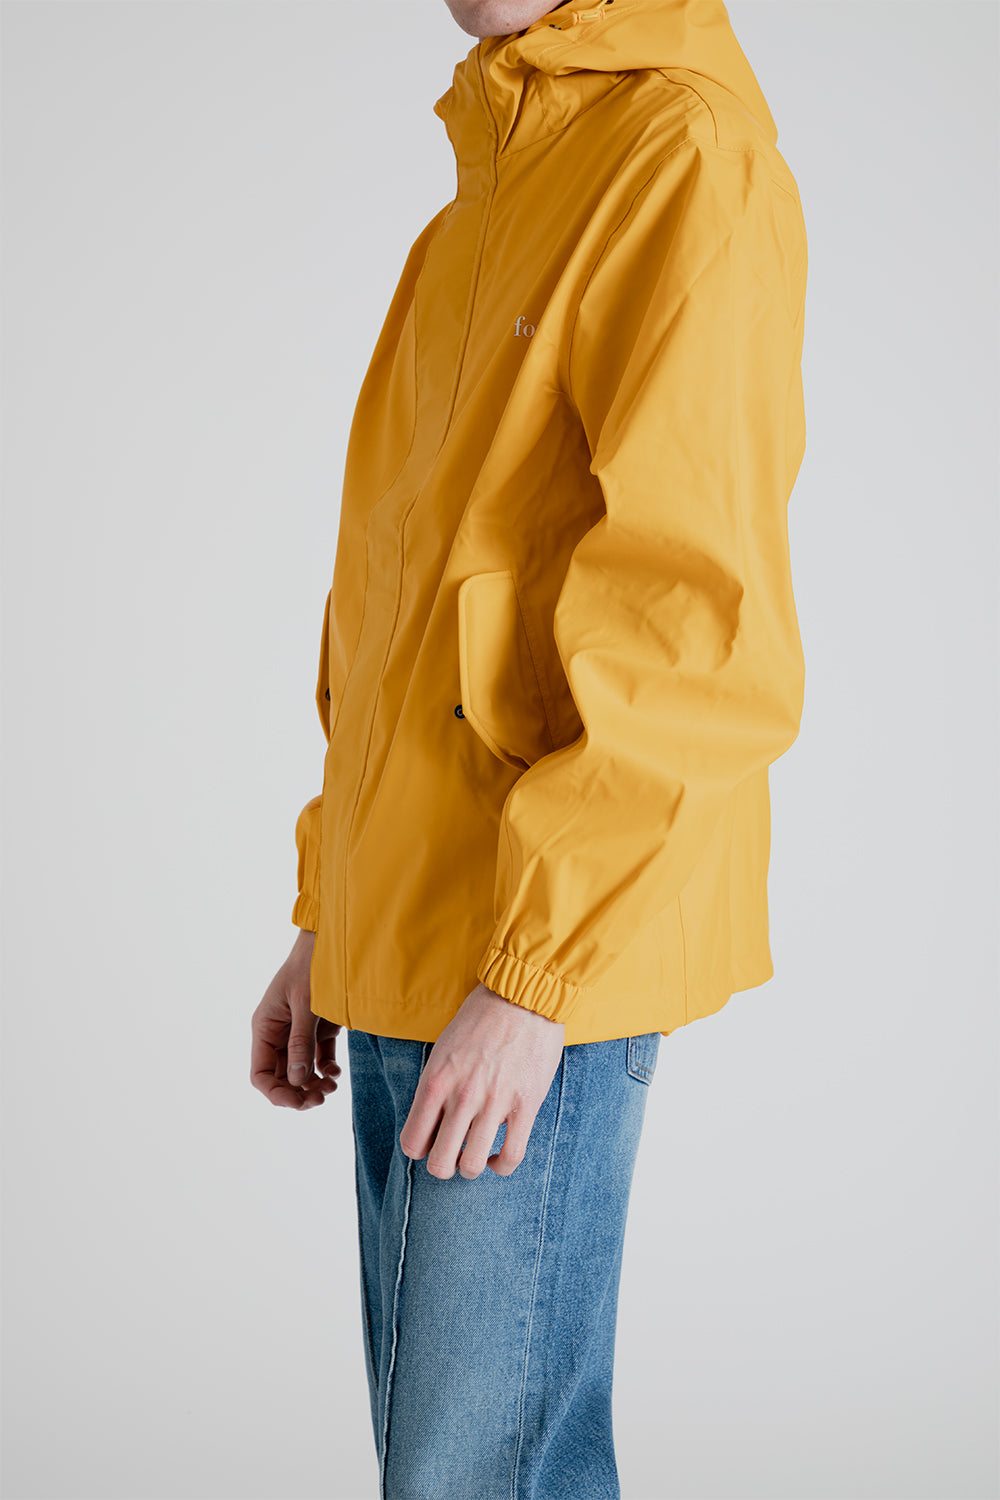 Forét Sprinkle Raincoat in Amber